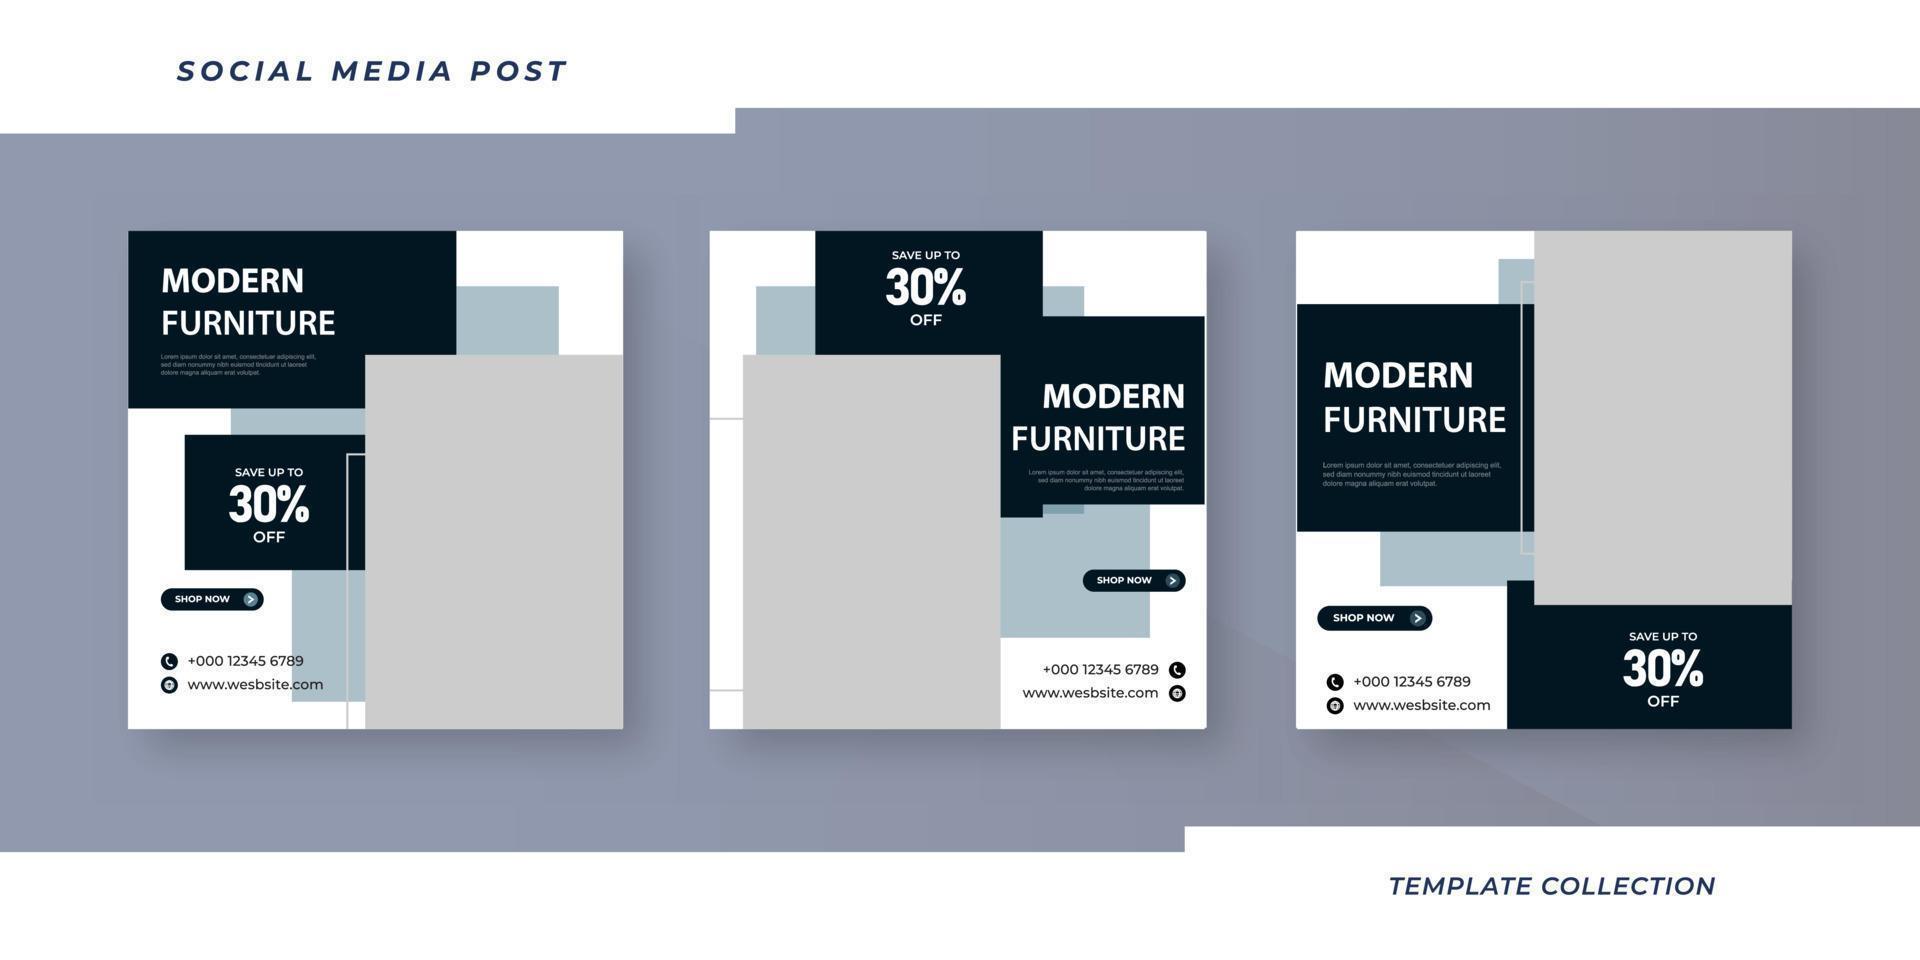 möbel försäljning Instagram posta samling social media posta mall design vektor